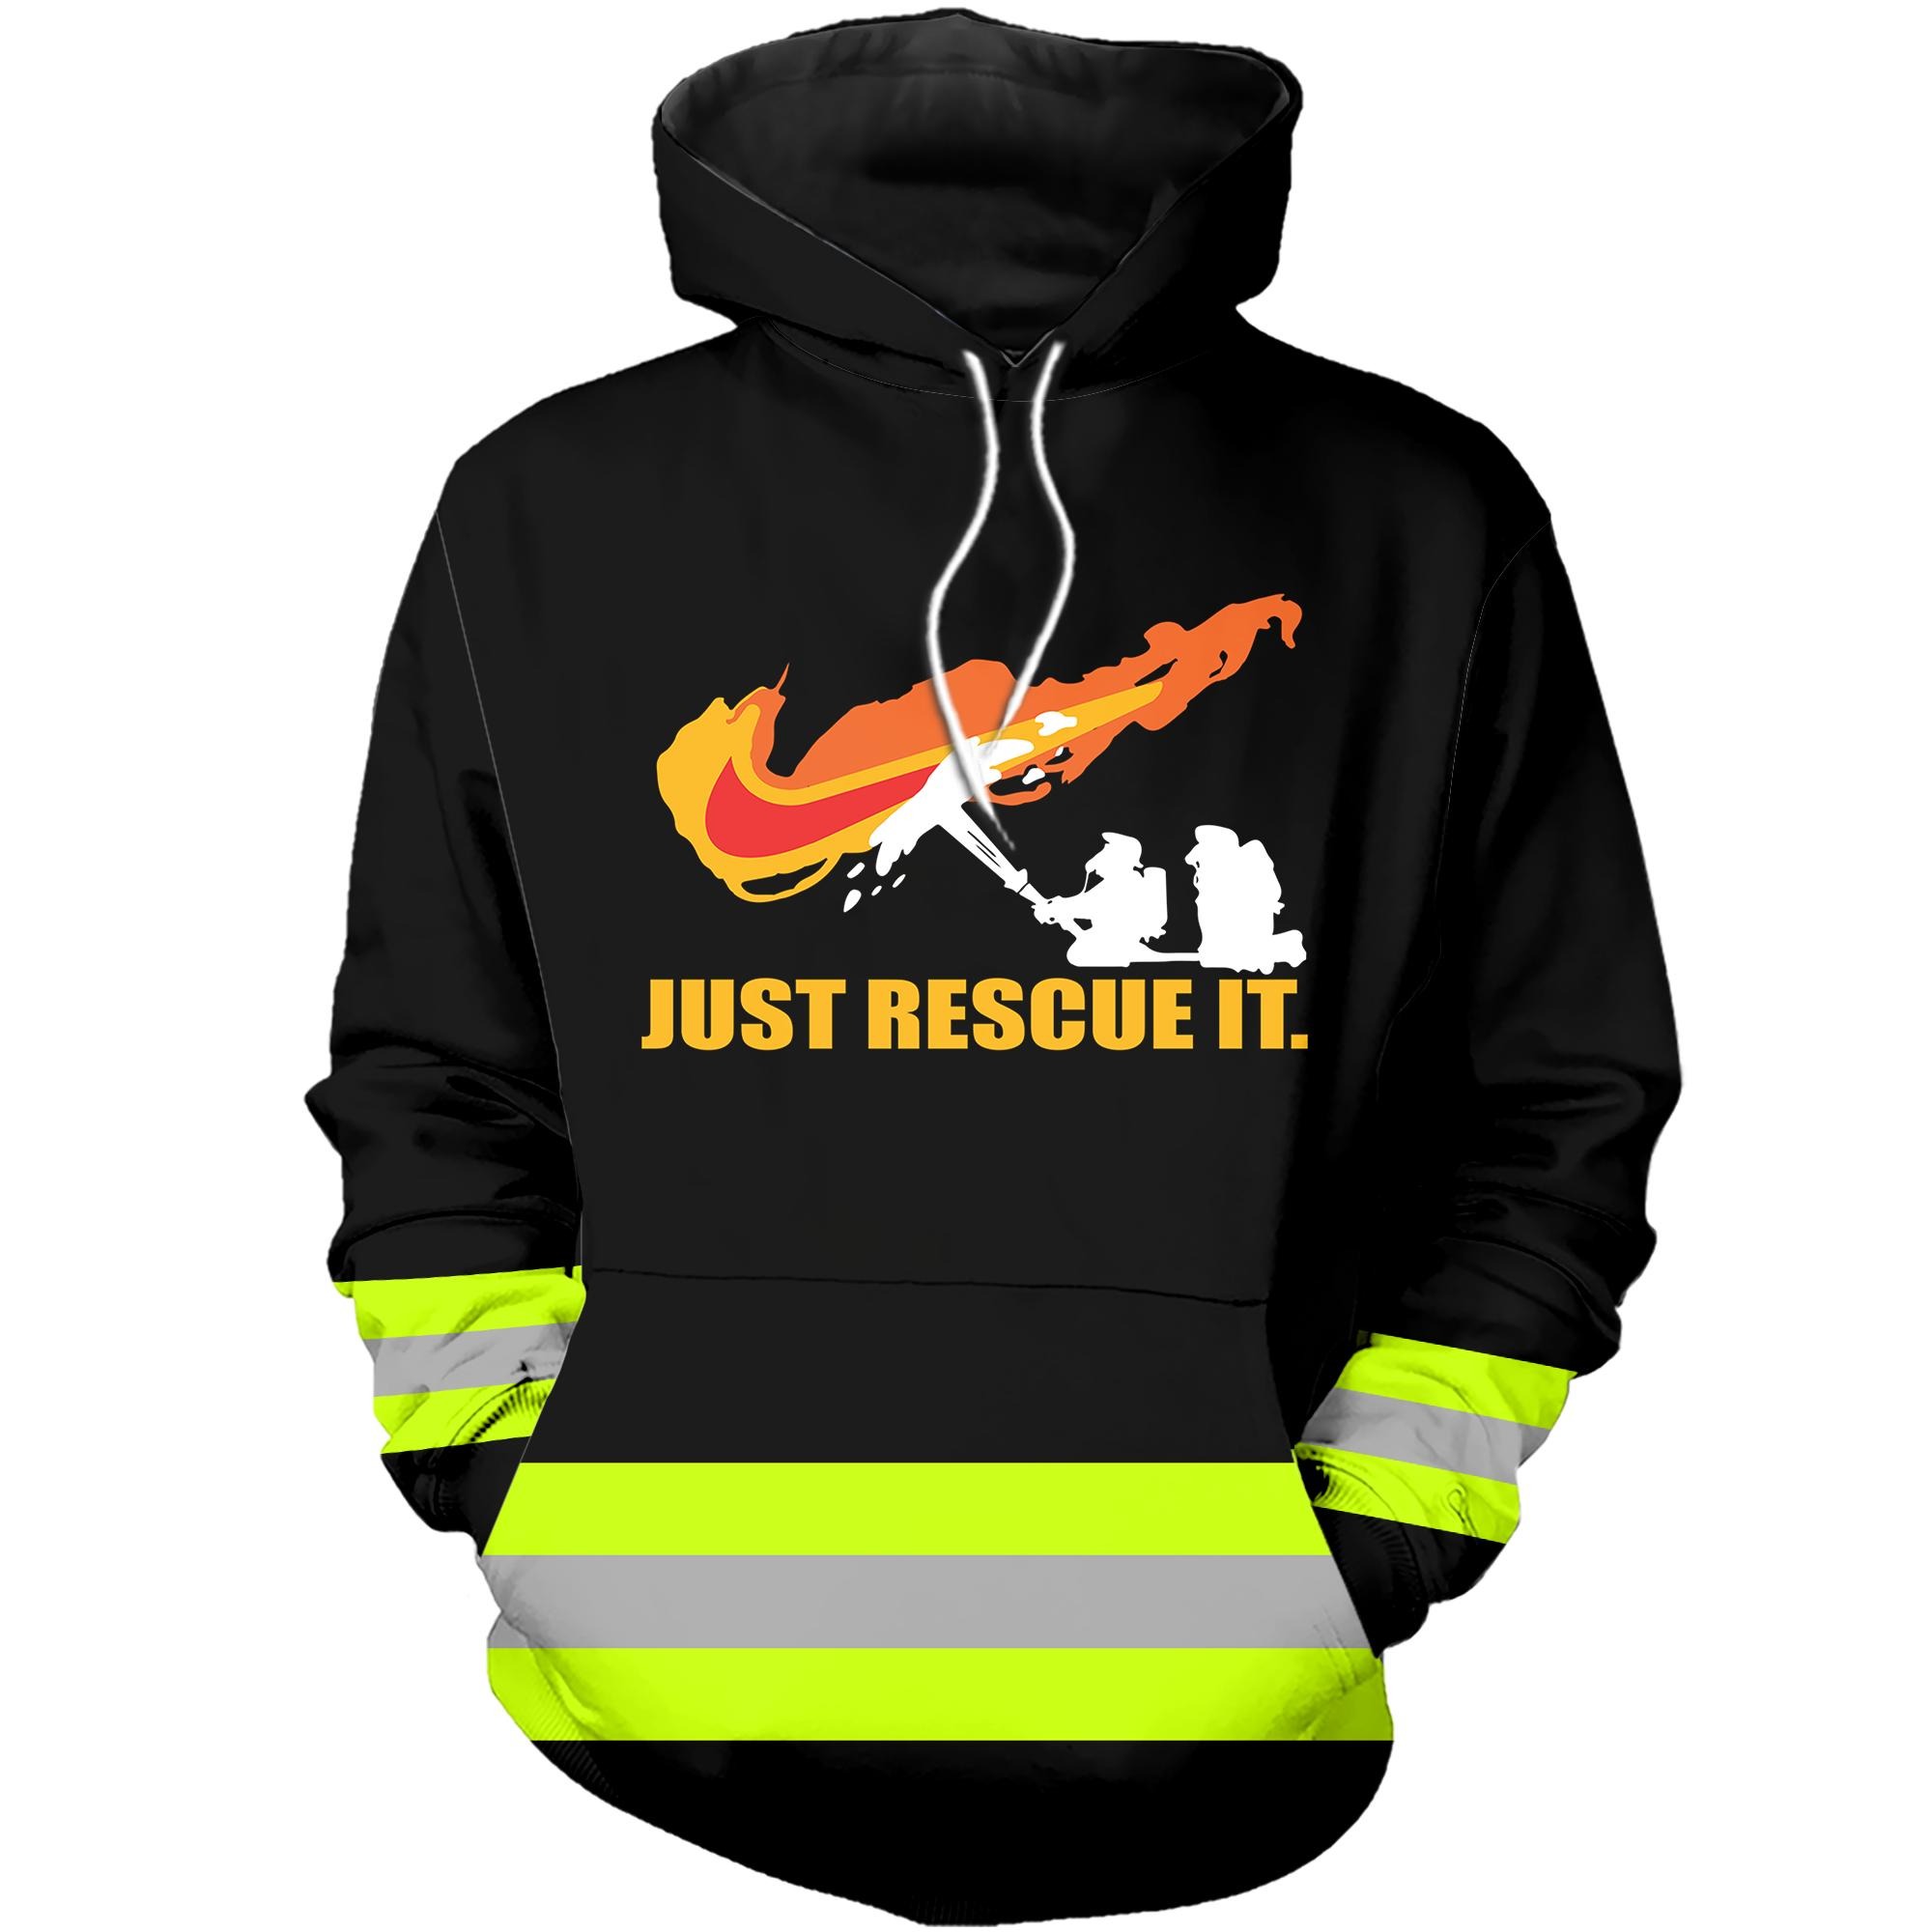 A badass firefighter 3D hot hoodie